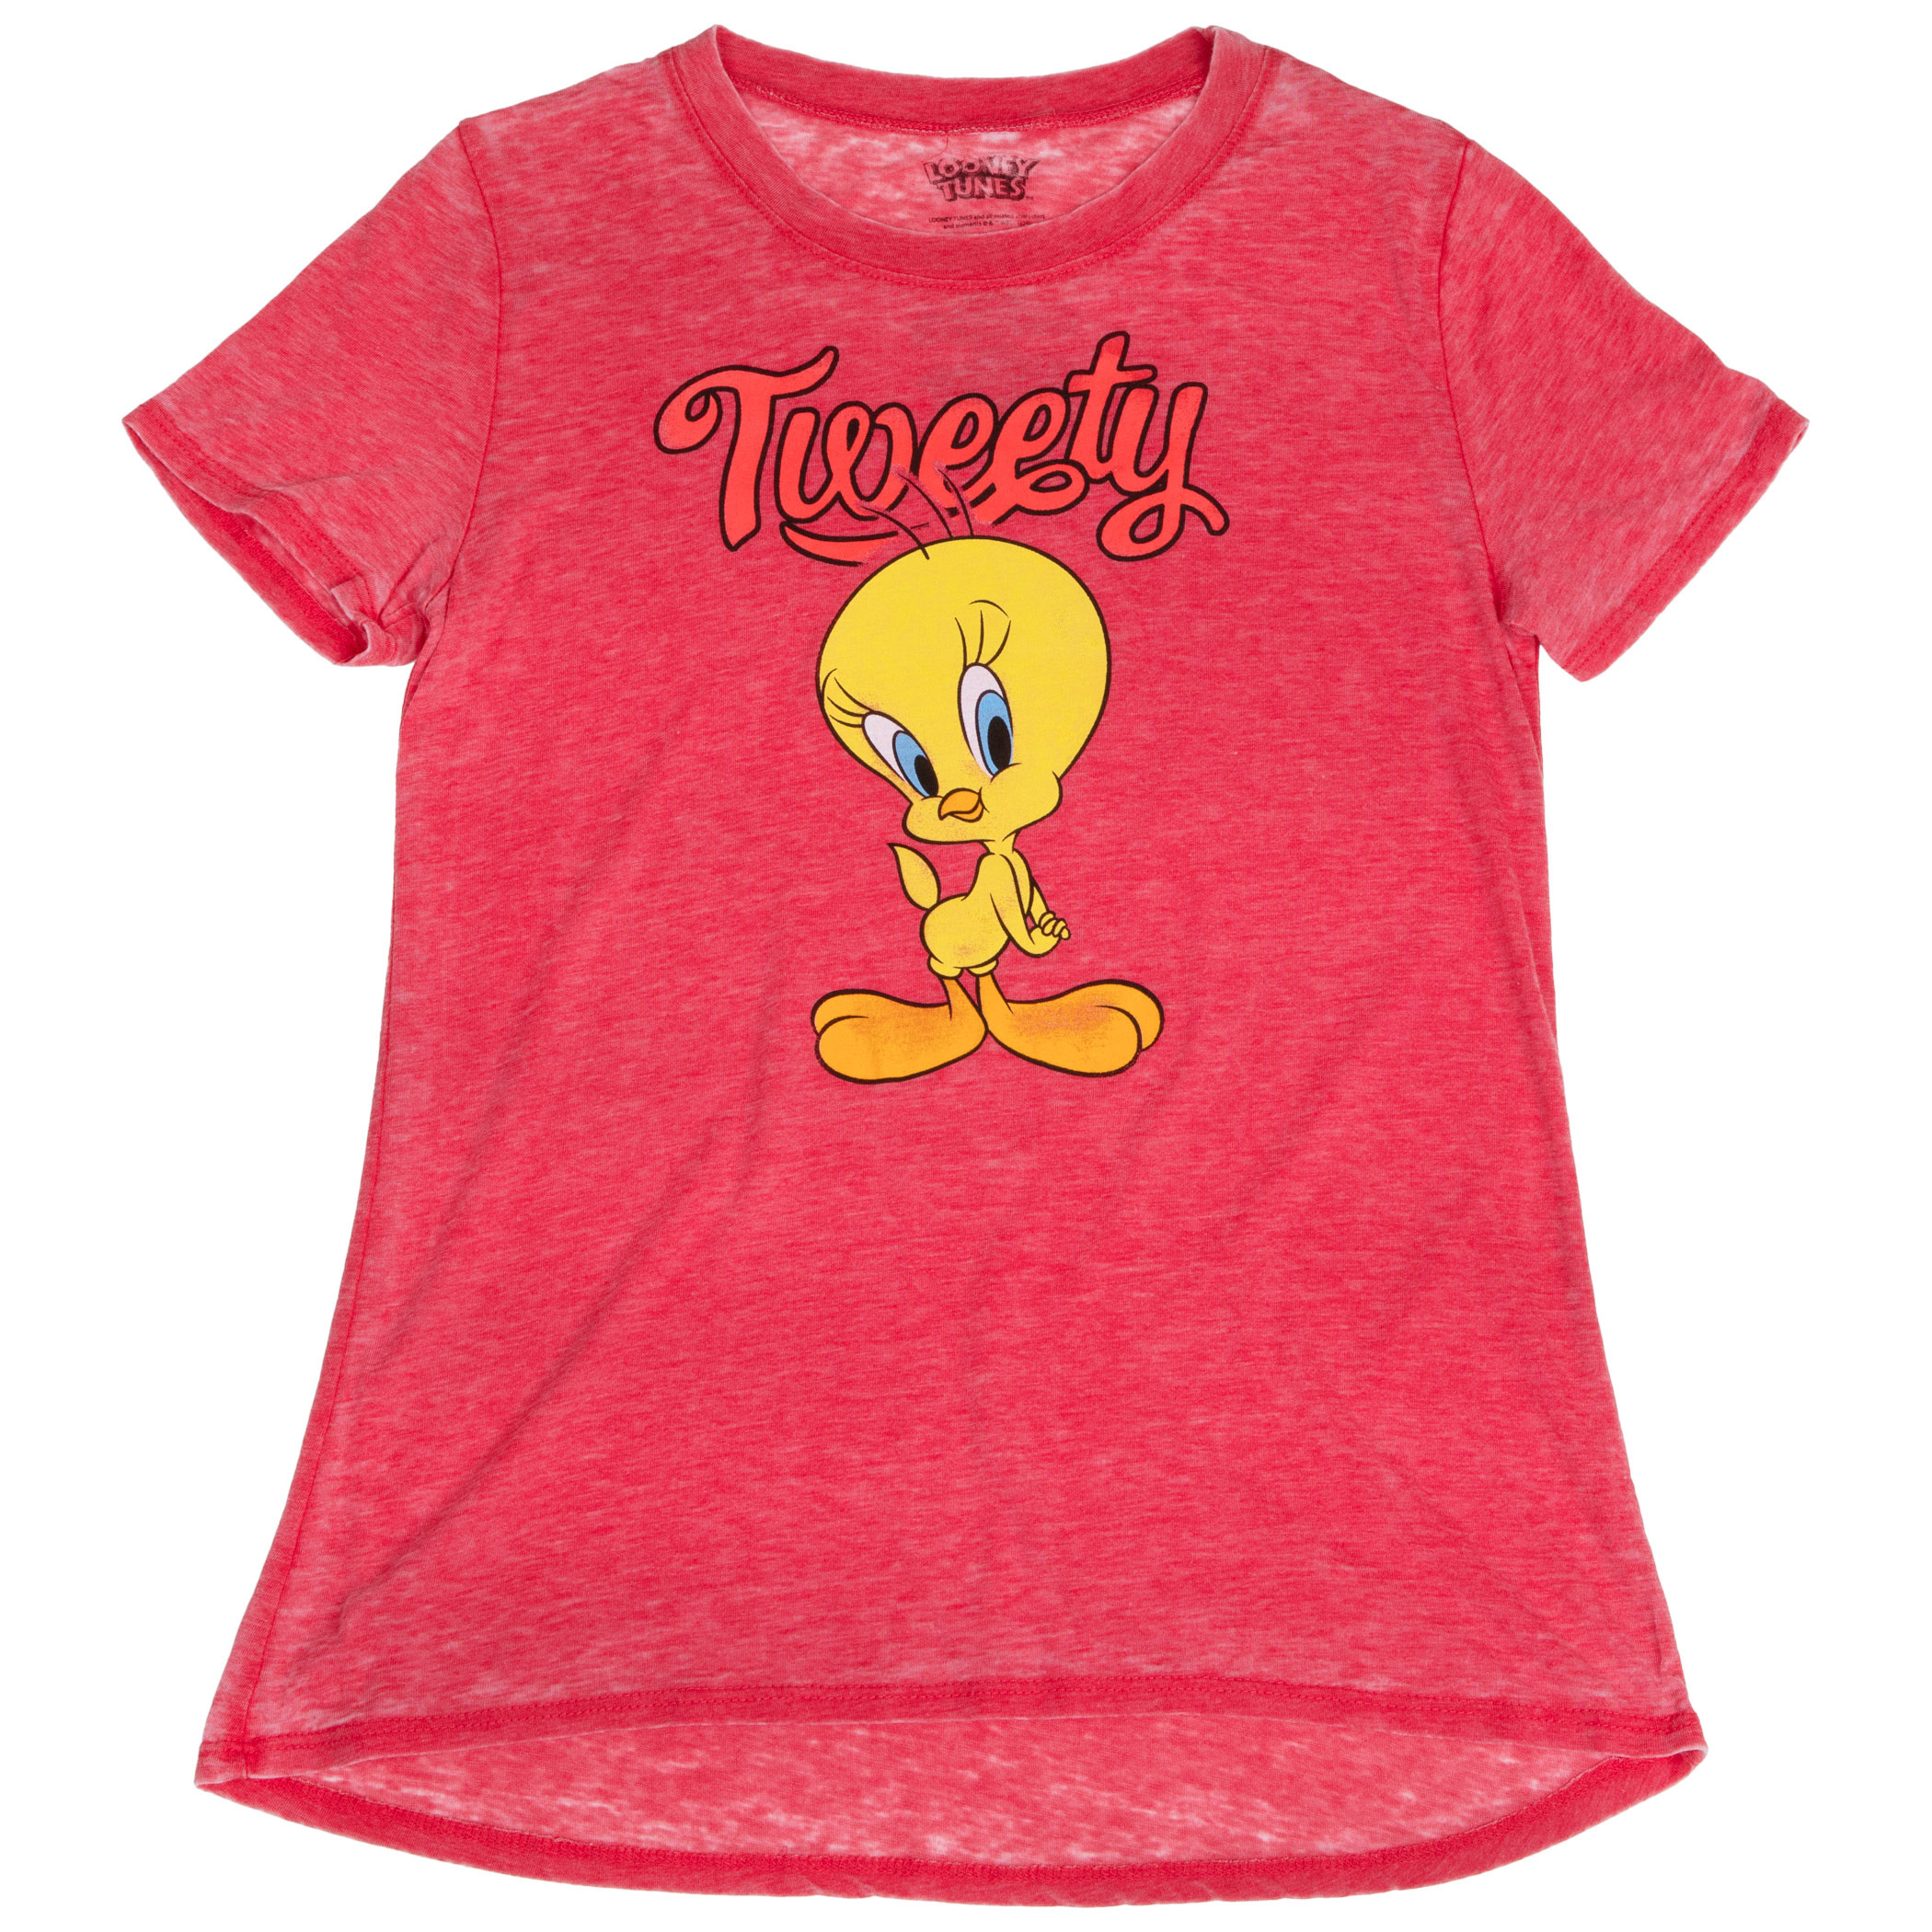 Looney Tunes Tweety Bird Burnout Women's T-Shirt